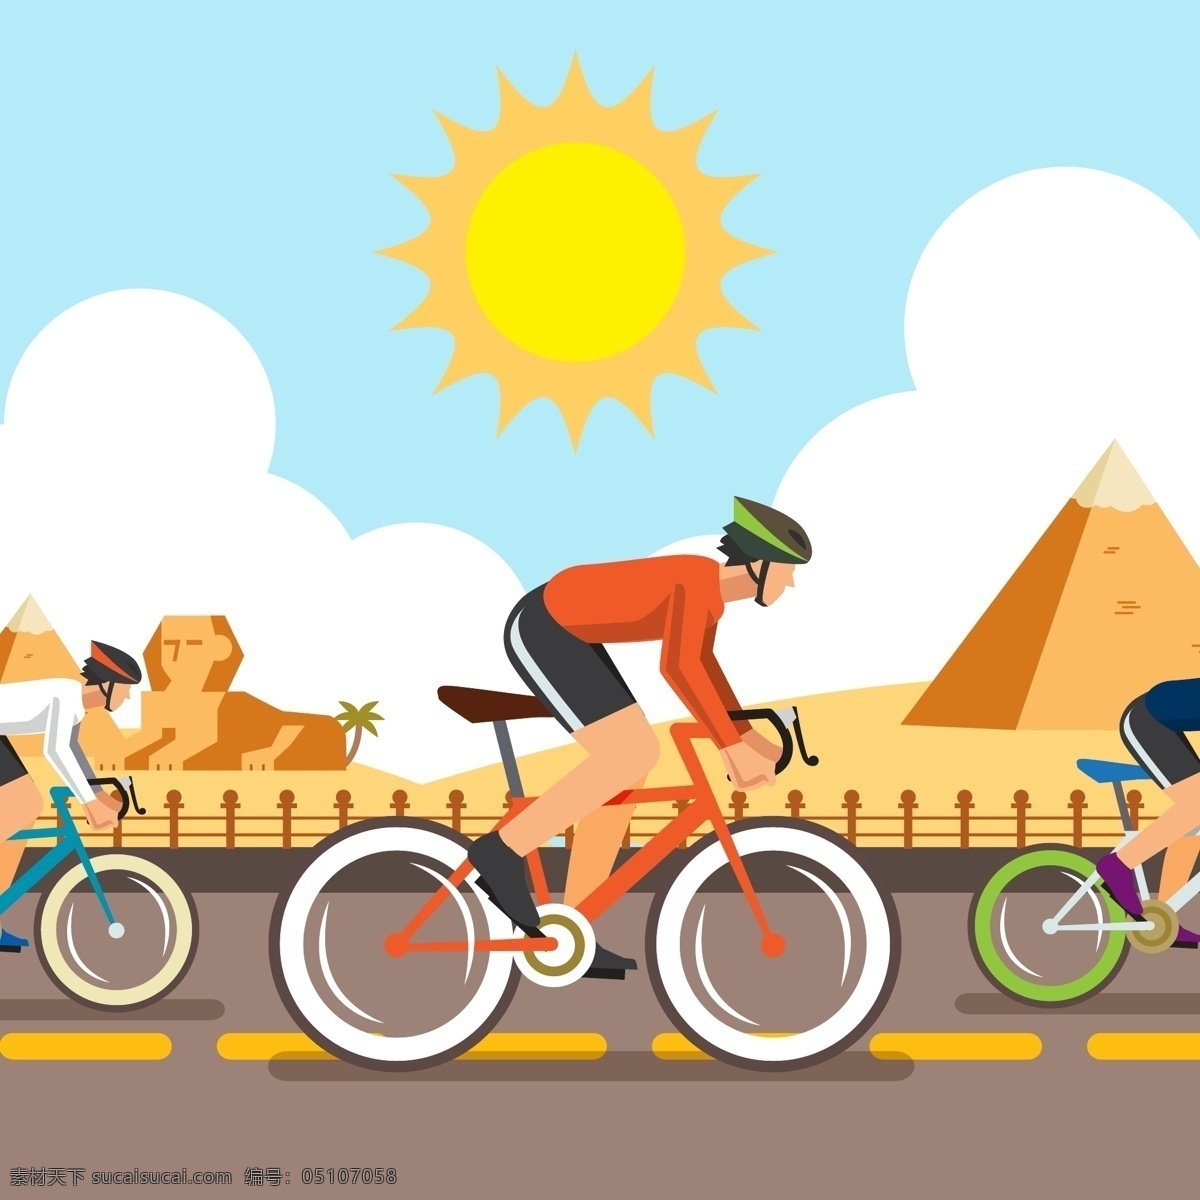 自行车比赛 运动 体育运动 奥运会 比赛 运动海报 运动比赛海报 运动员 户外运动 室内运动 运动俱乐部 体育馆海报 卡通设计